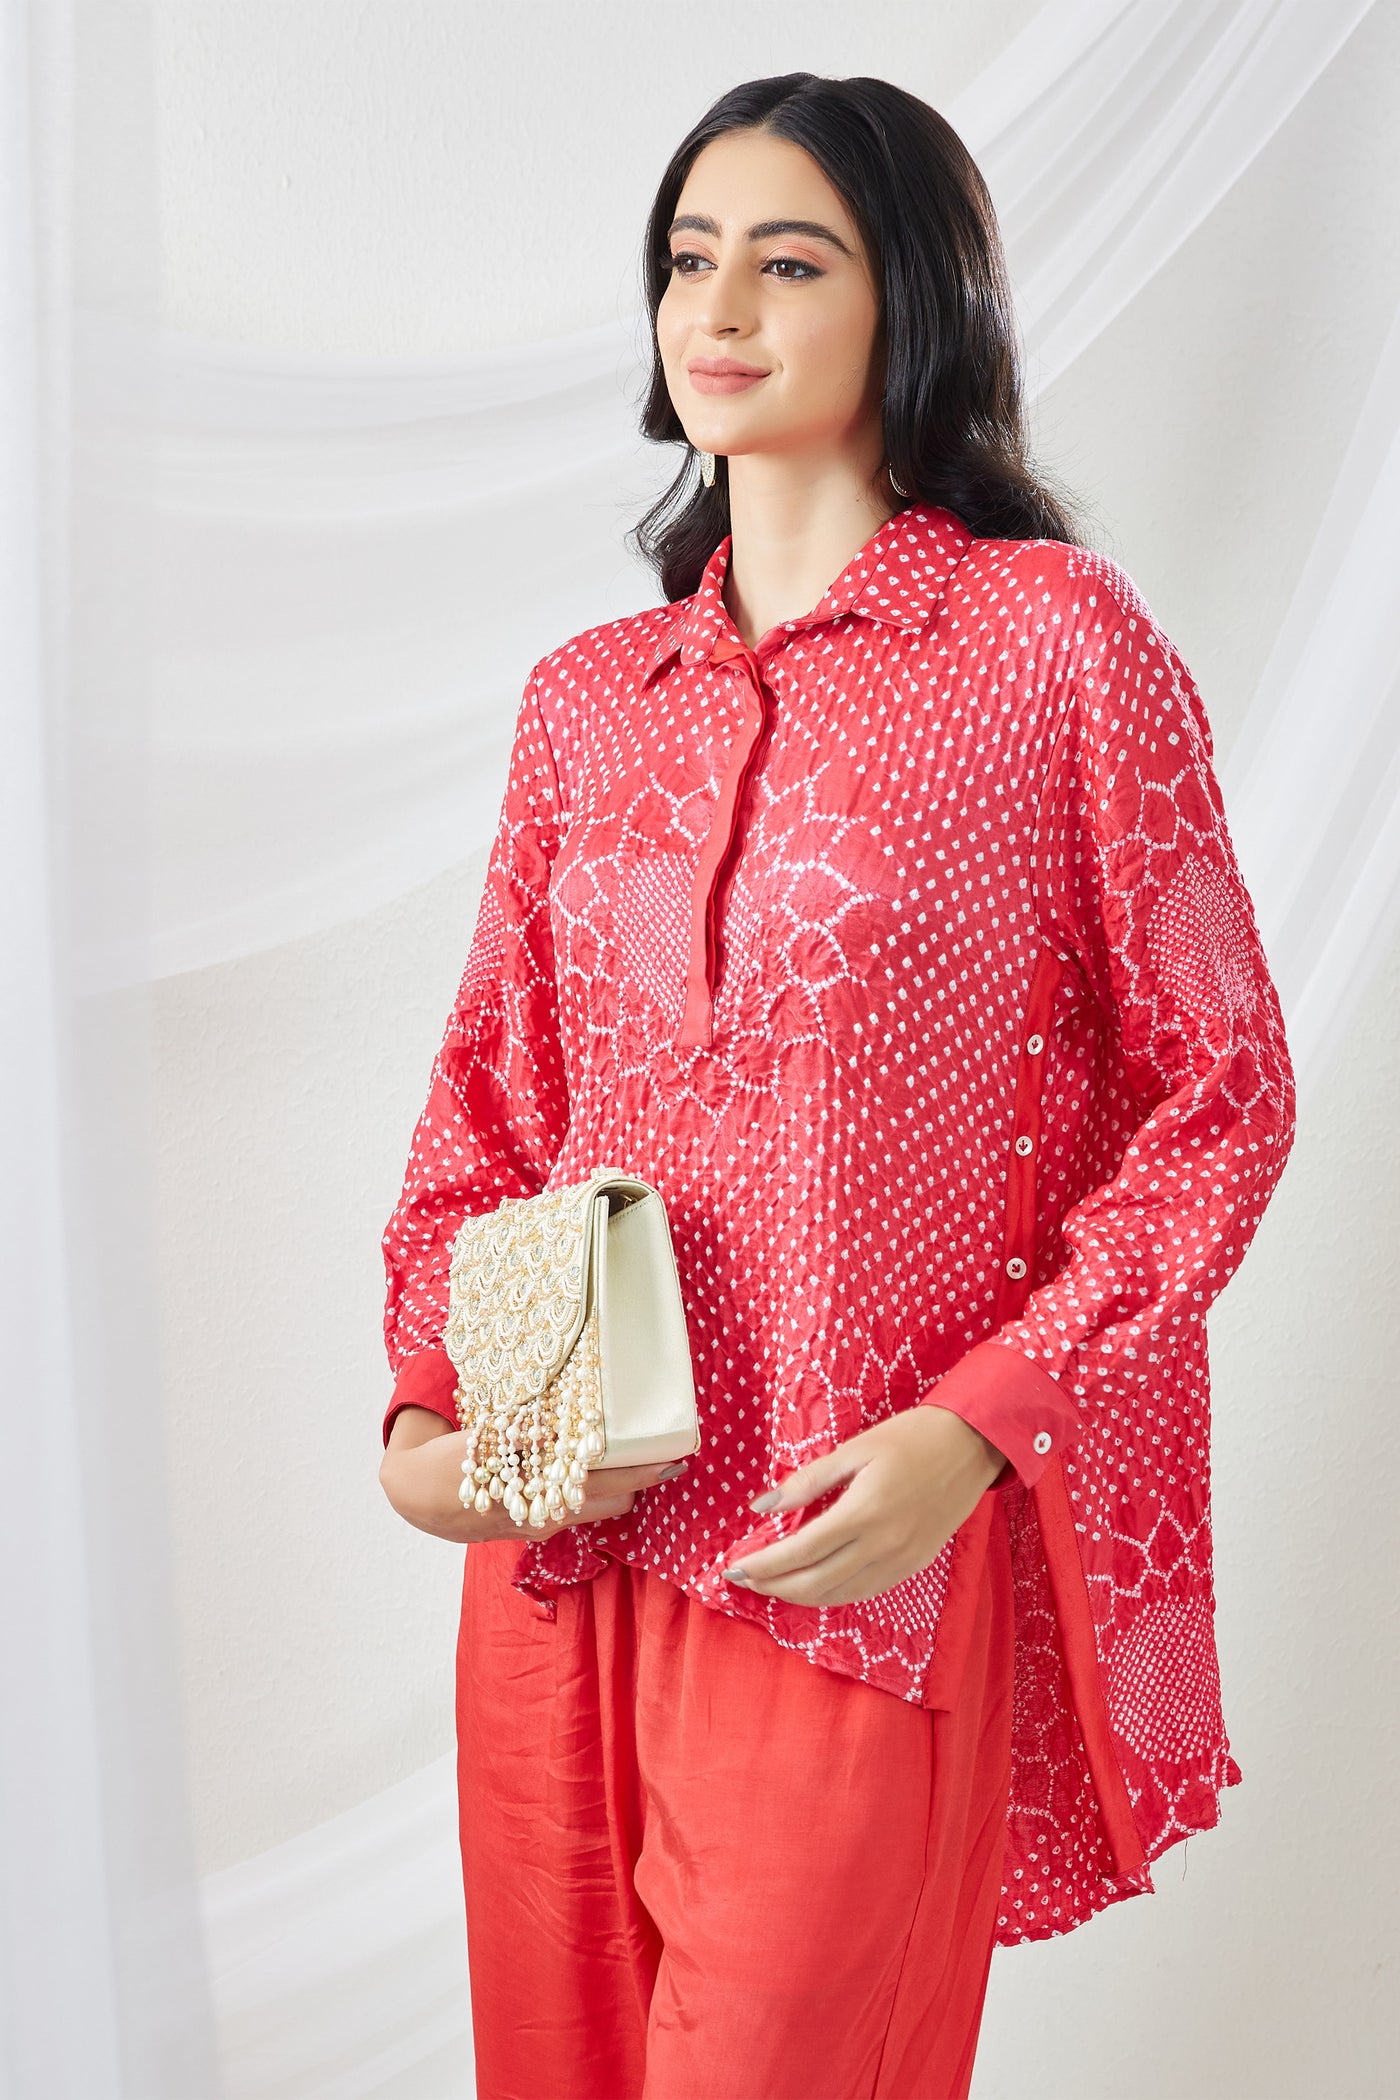 twenty nine Gajji Silk Bandhani Panel Shirt With Pants red  fusion indian designer wear online shopping melange singapore